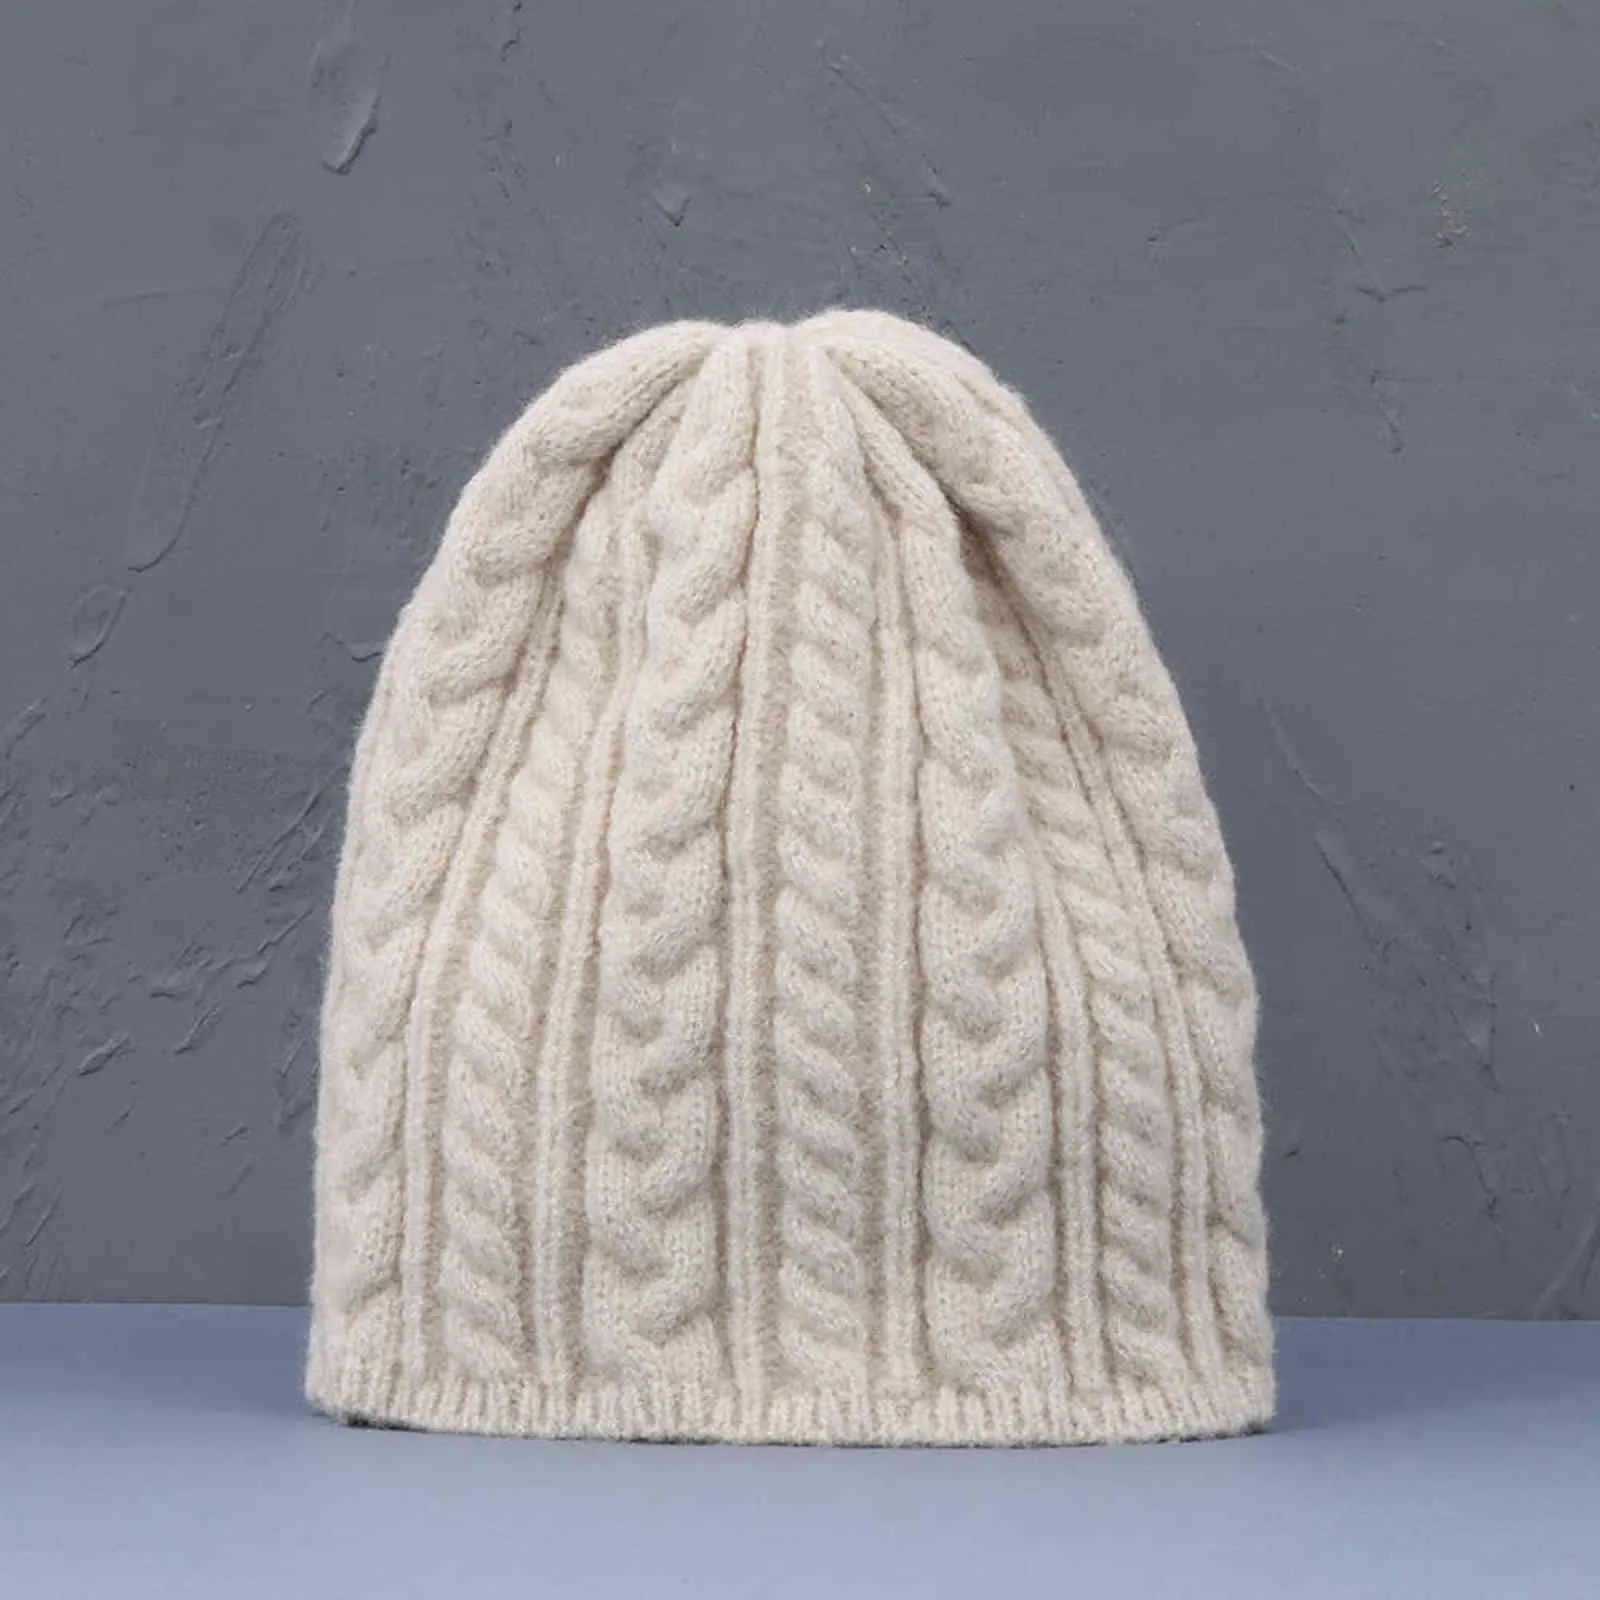 2021 NUOVI cappelli lavorati a maglia per le donne Beanie nero cappello invernale cappelli da uomo berretti da donna per le signore zucchetto solido berretto lavorato a maglia cappello spesso Y21111